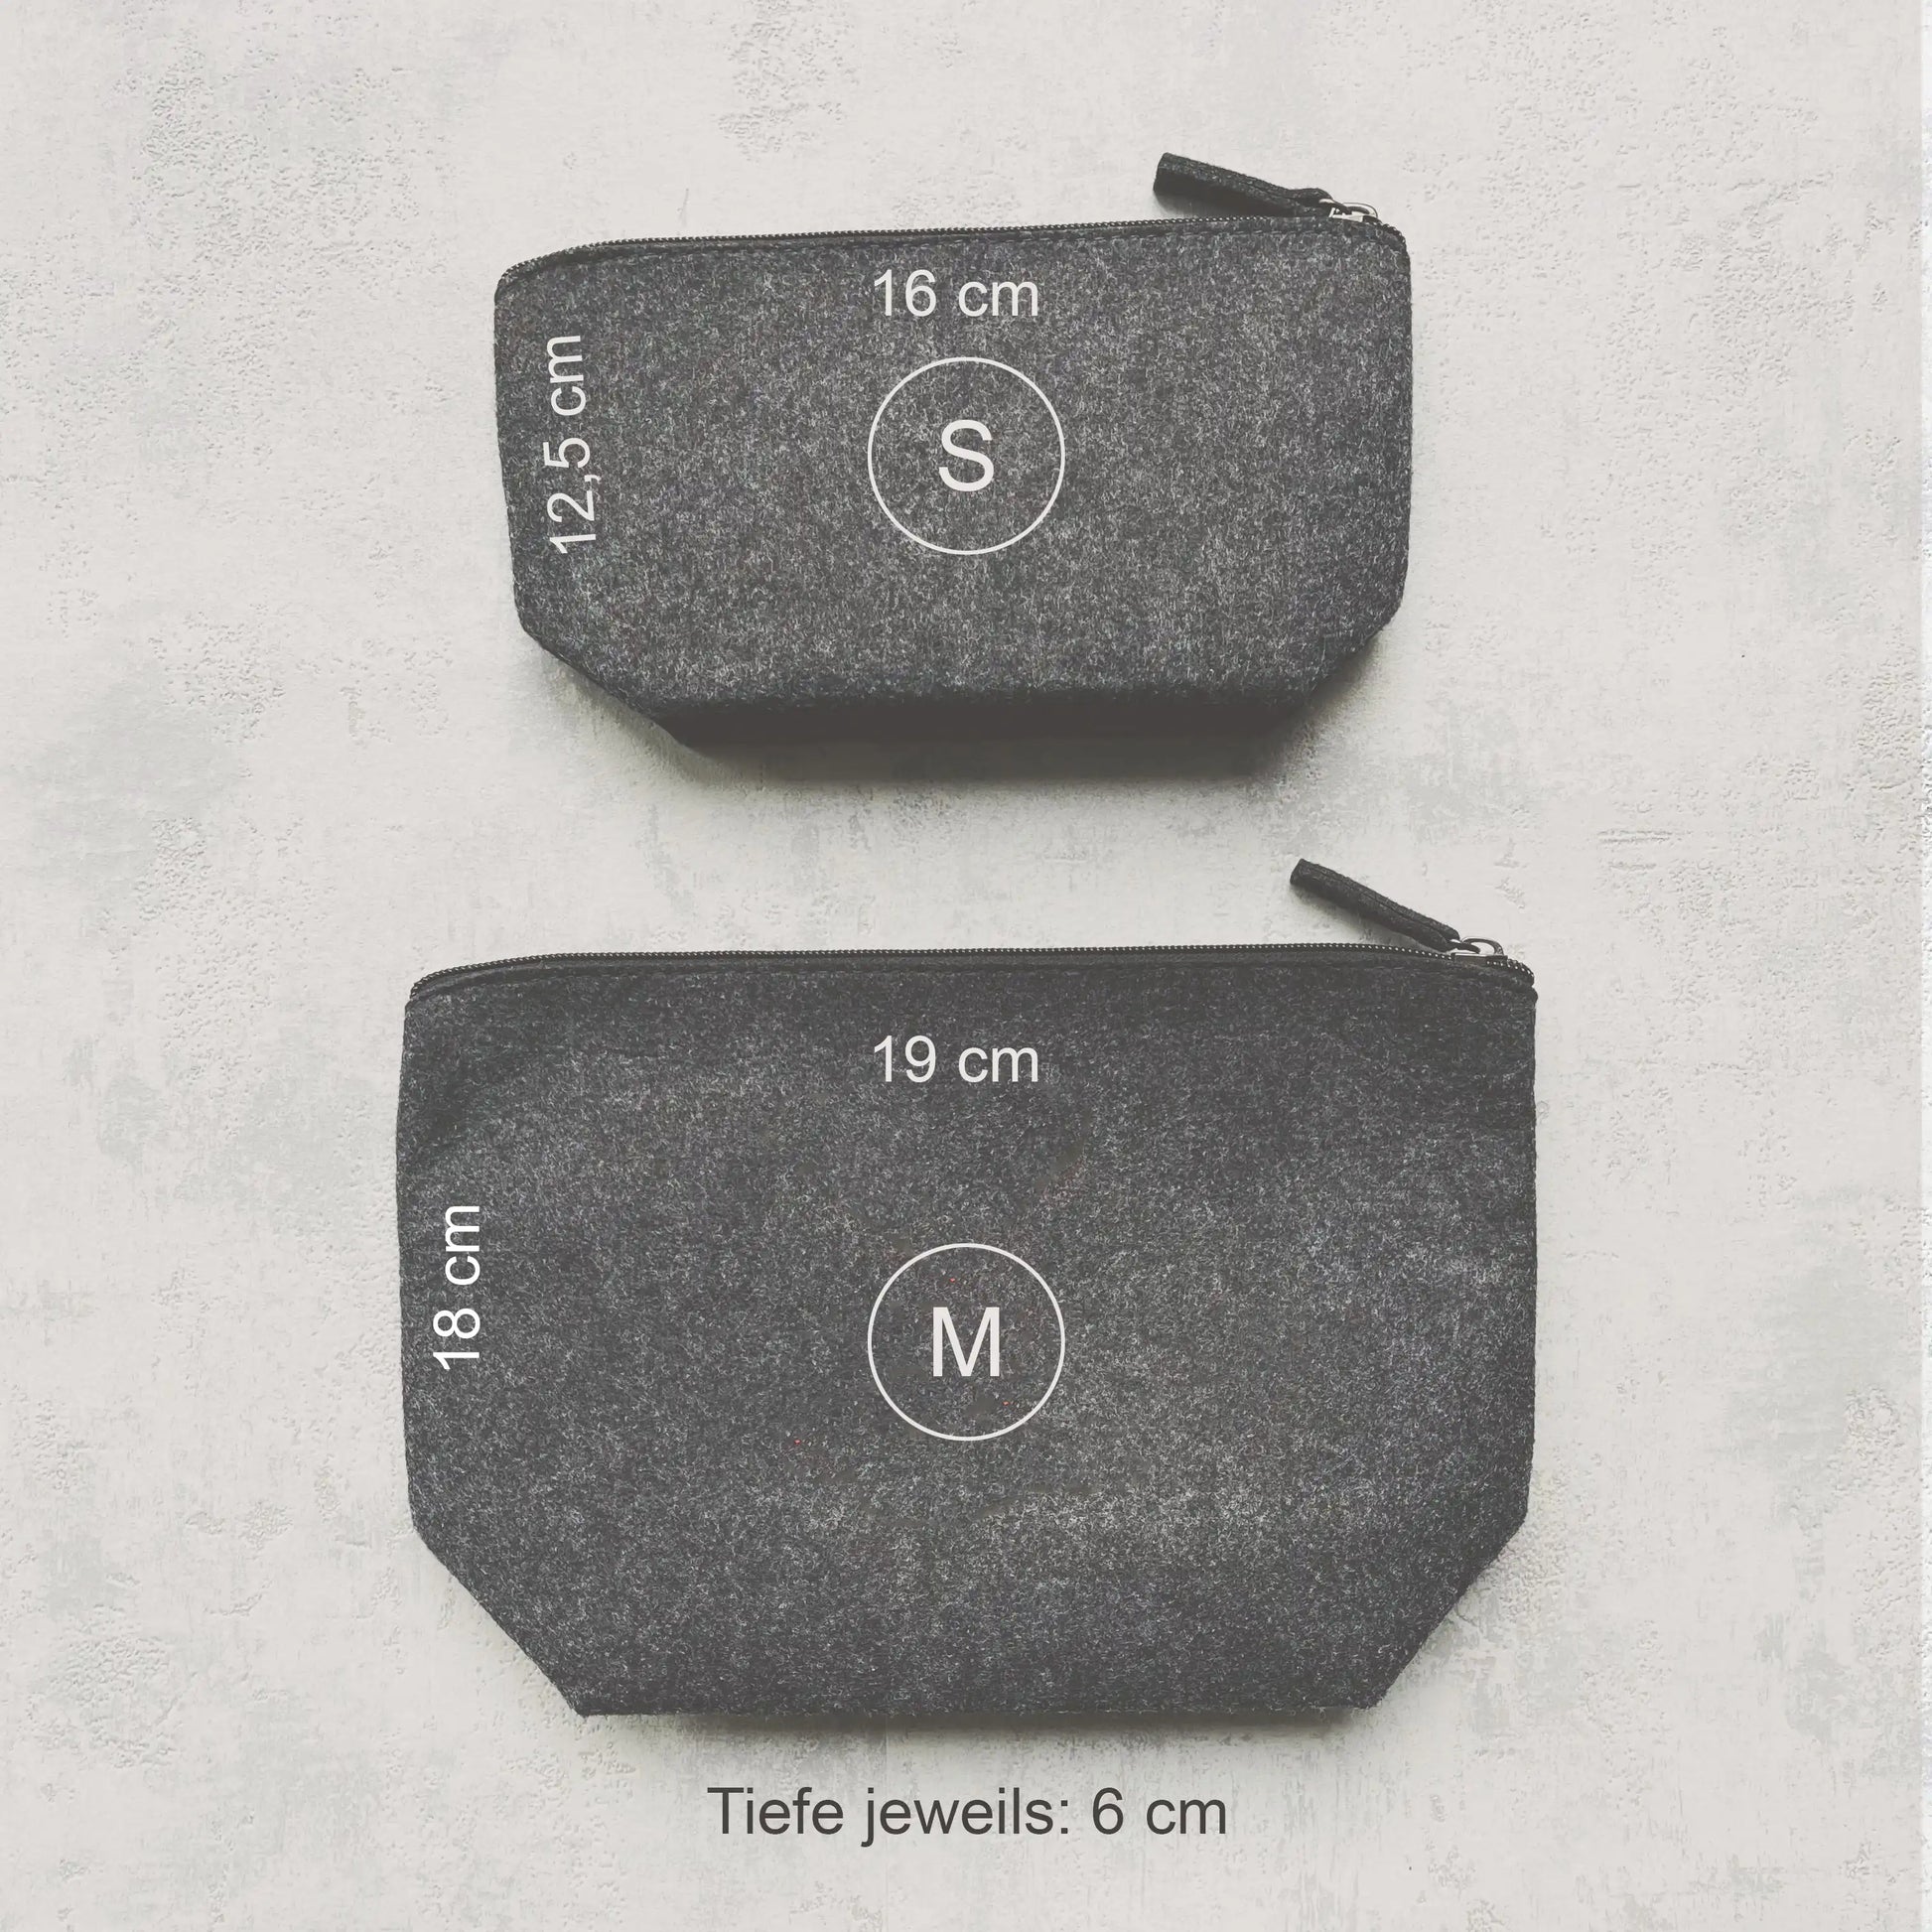 Größenvergleich zweier grauen Filztaschen in S (12,5 x 16 cm) und M (18 x 19 cm) von hej liebling